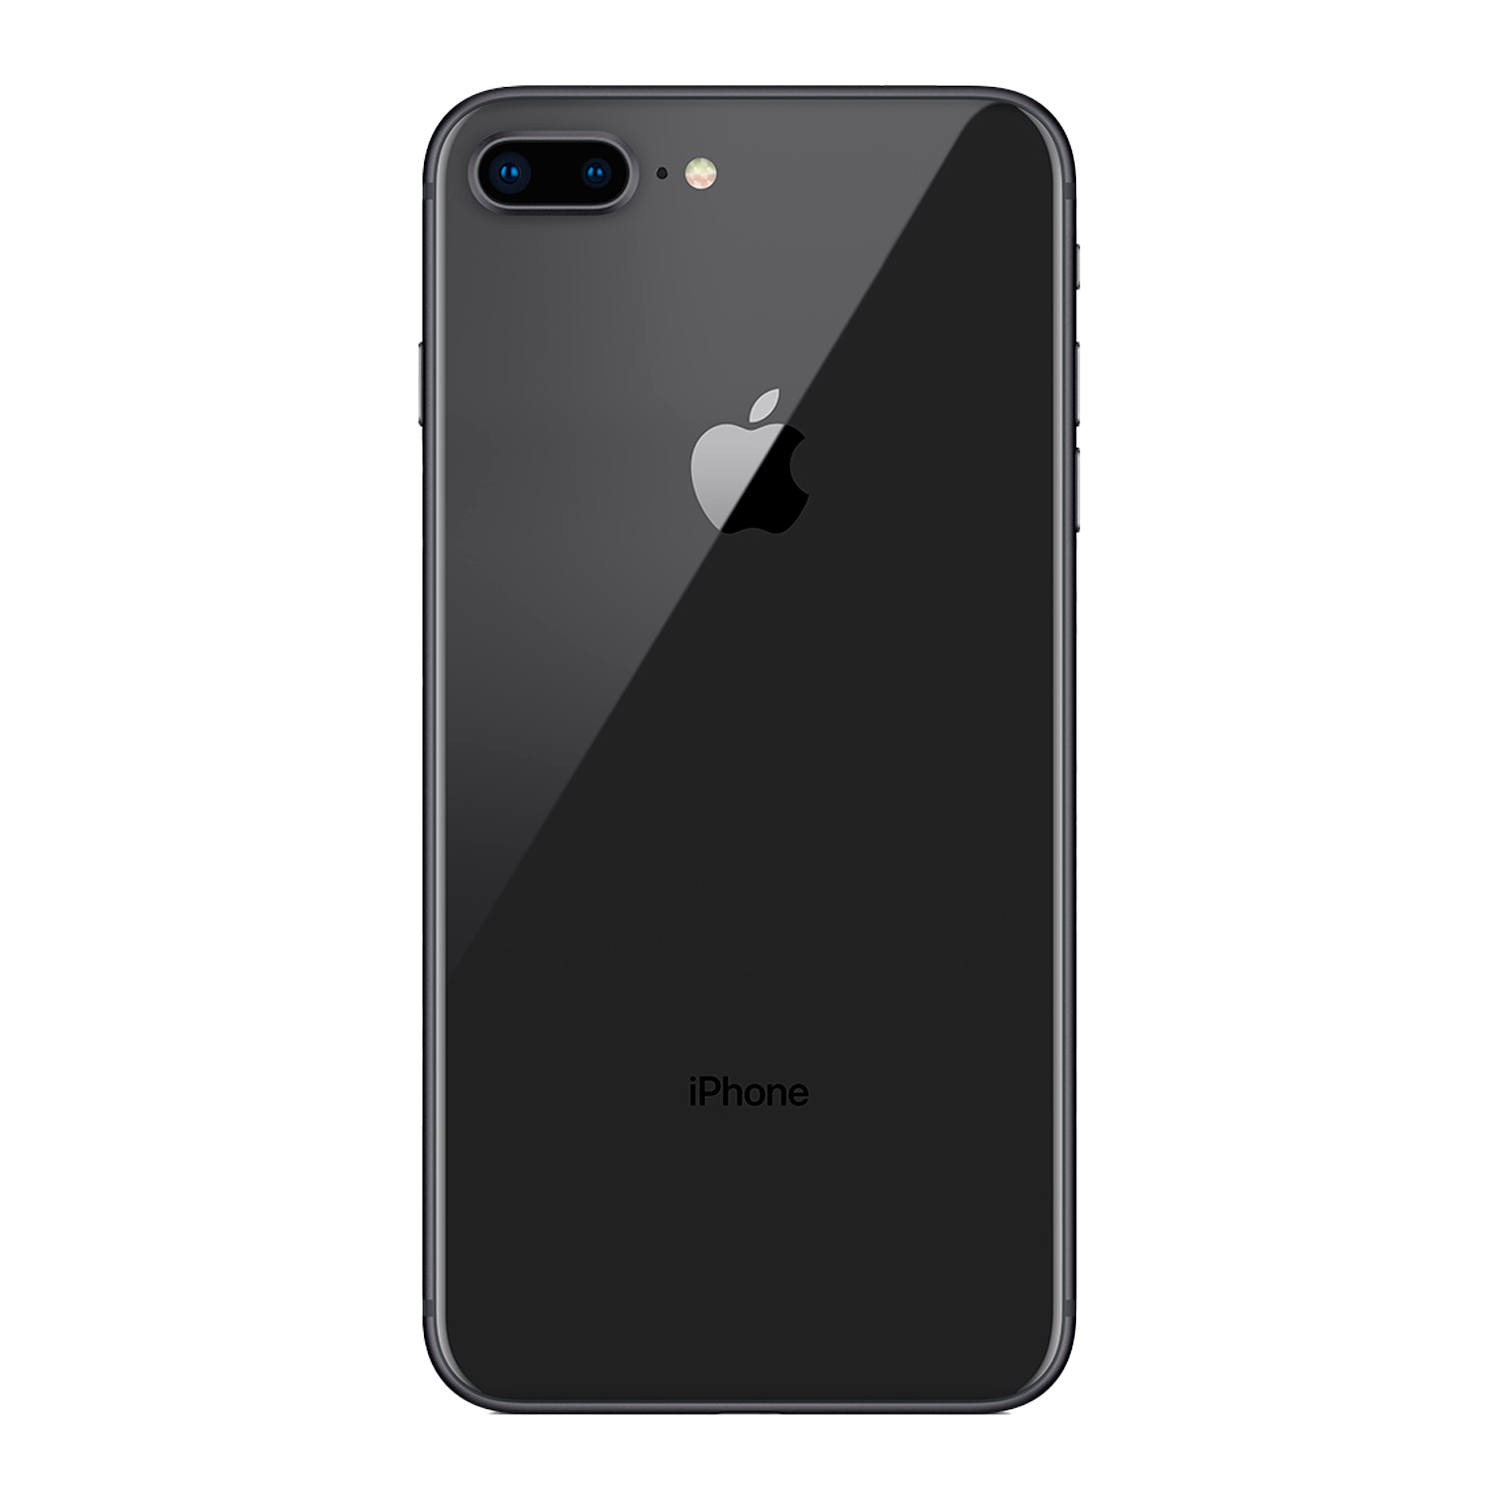 Apple iPhone 8 Plus *Swap A* A1864 1897 64GB 3GB RAM Tela 5.5" - Preto (Somente Aparelho)
